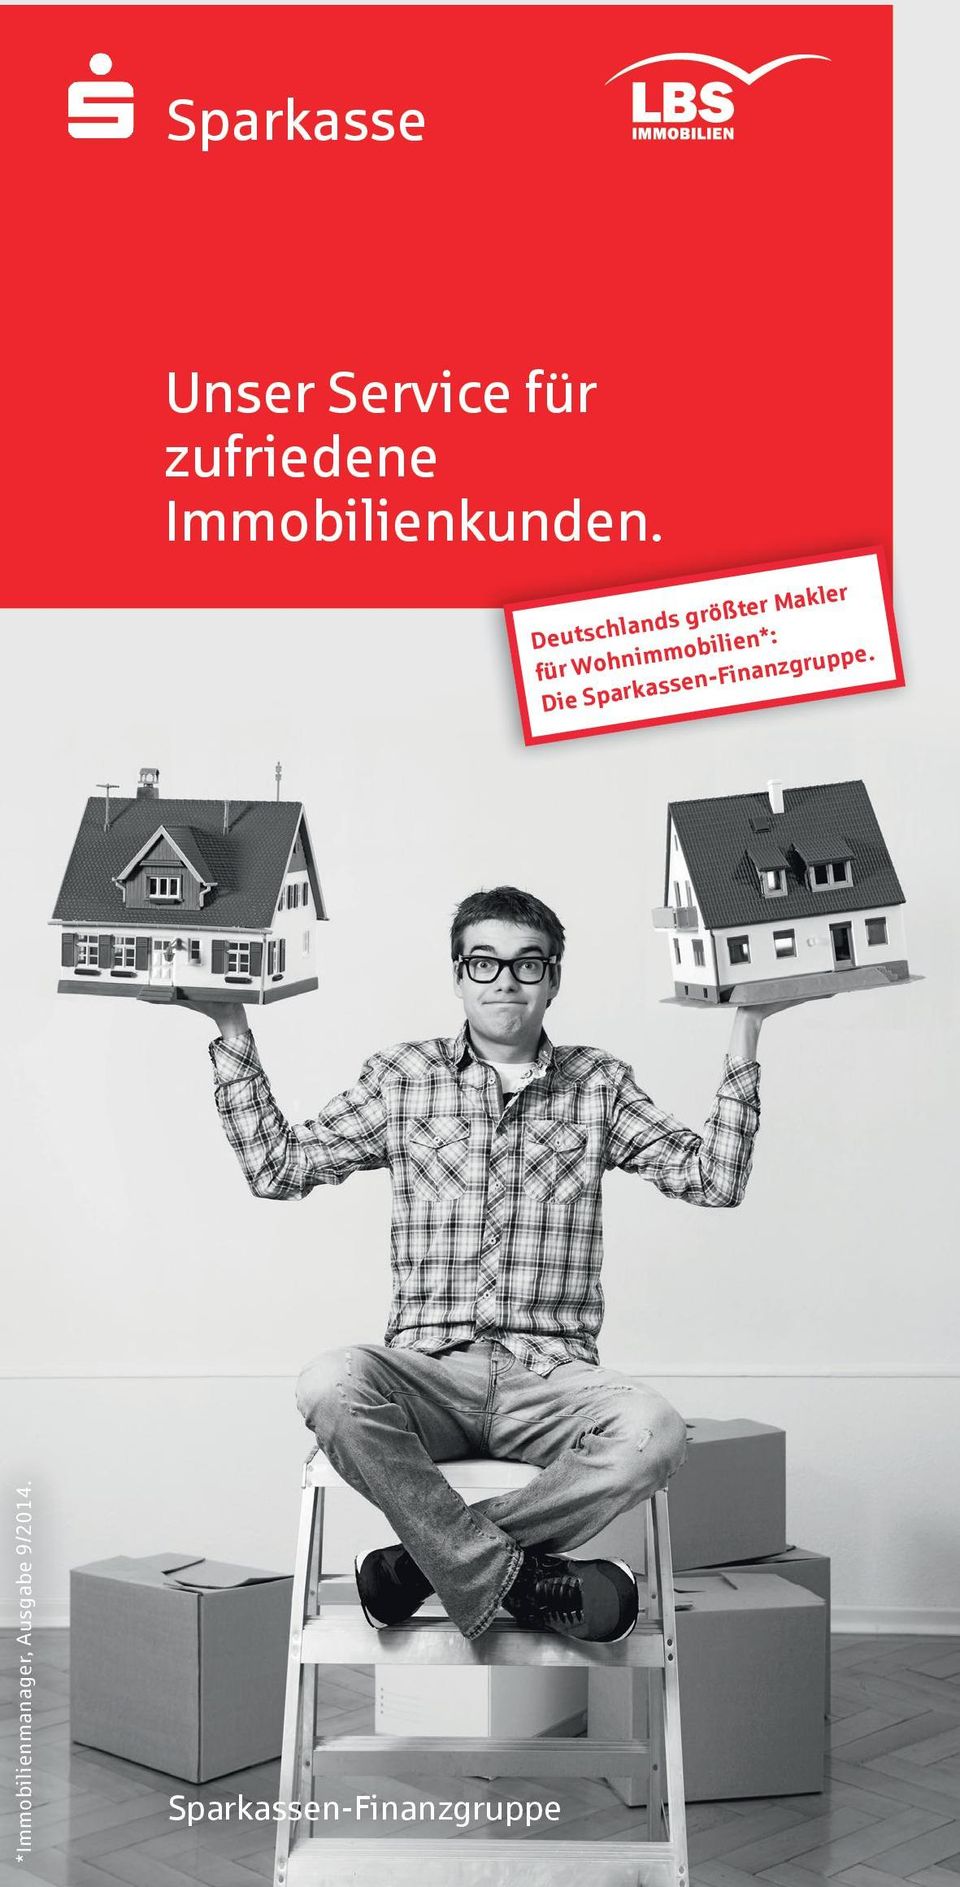 Deutschlands größter Makler für Wohnimmobilien*: